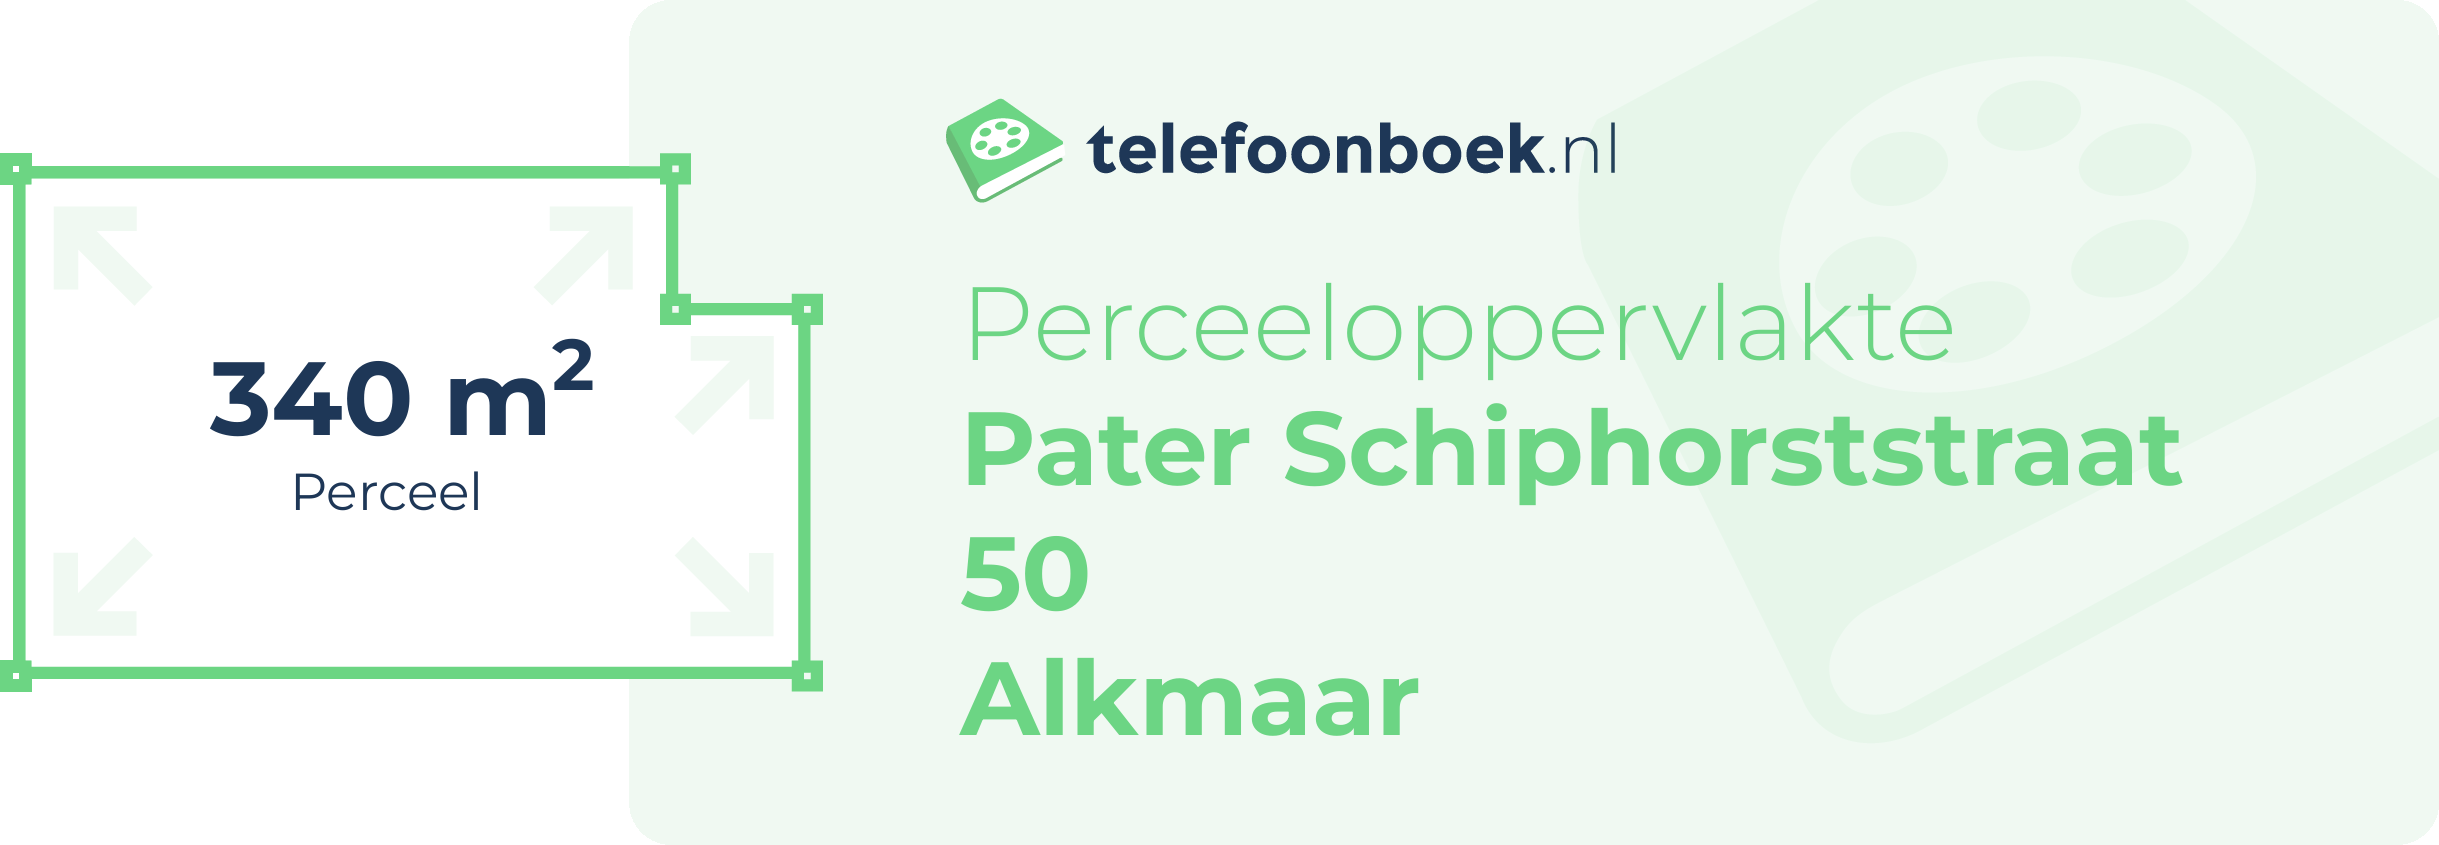 Perceeloppervlakte Pater Schiphorststraat 50 Alkmaar